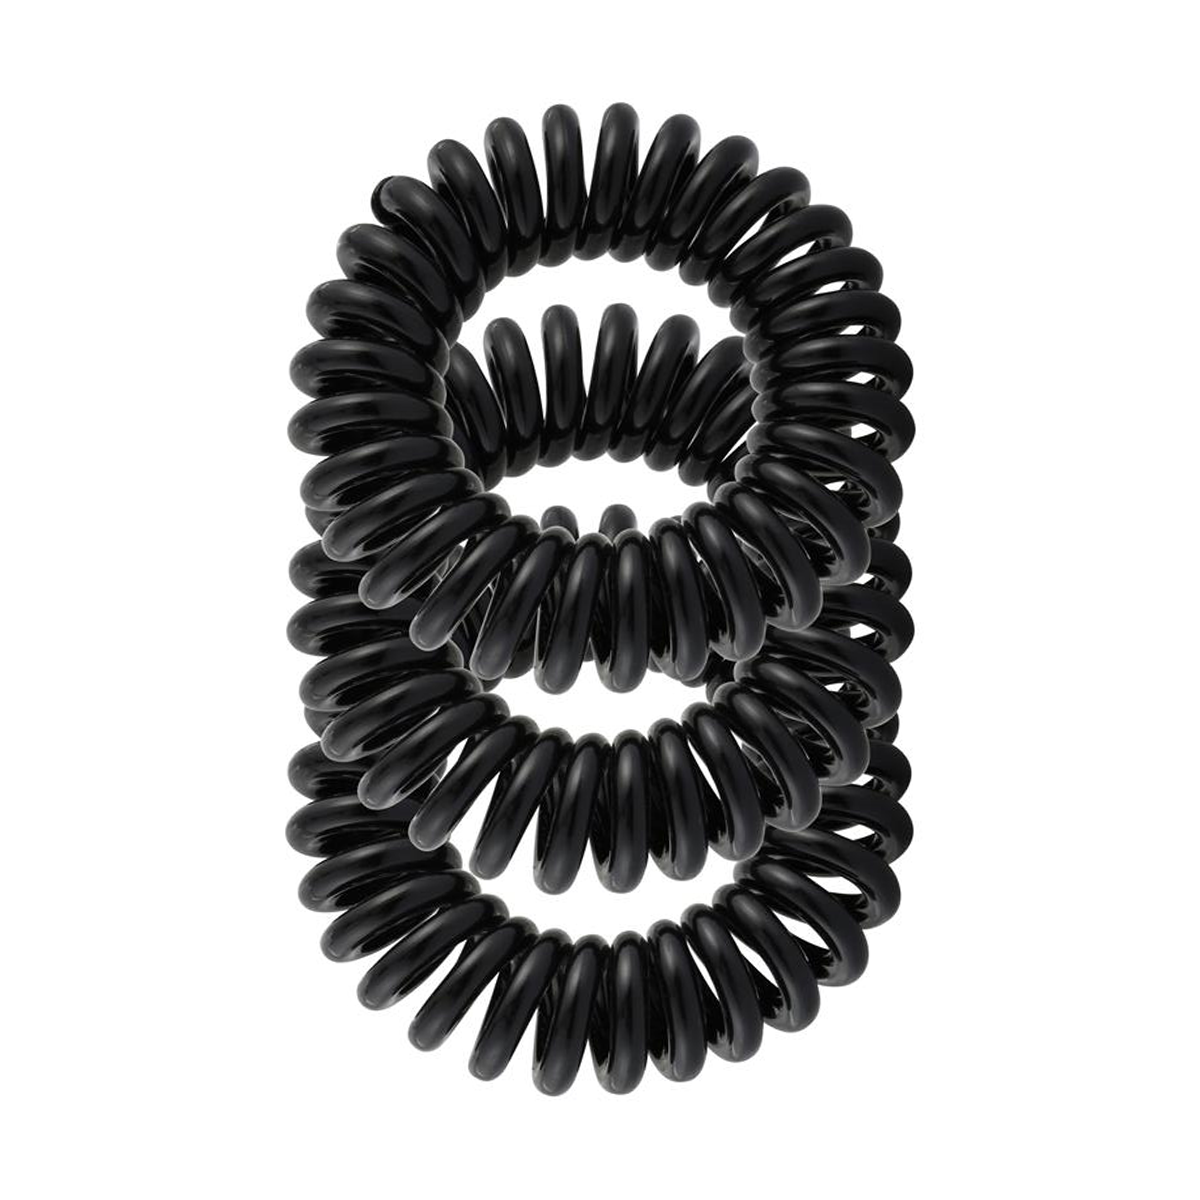 Spiral Hair Ties Black – 3 Pack - Shampoo Plus